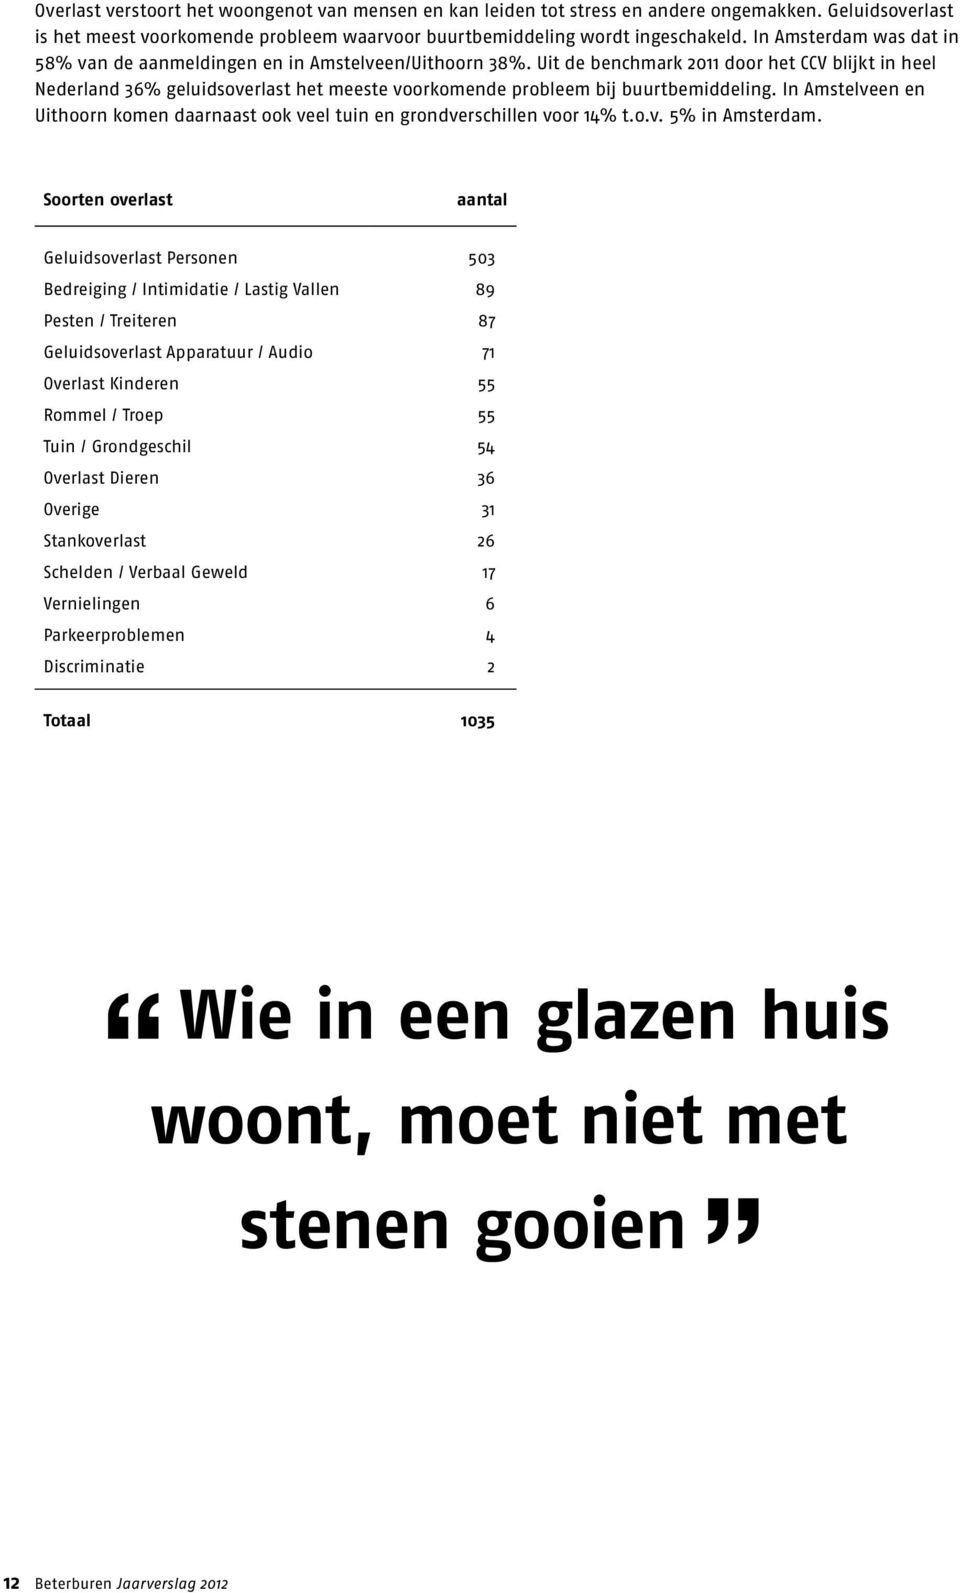 Uit de benchmark 2011 door het CCV blijkt in heel Nederland 36% geluidsoverlast het meeste voorkomende probleem bij buurtbemiddeling.